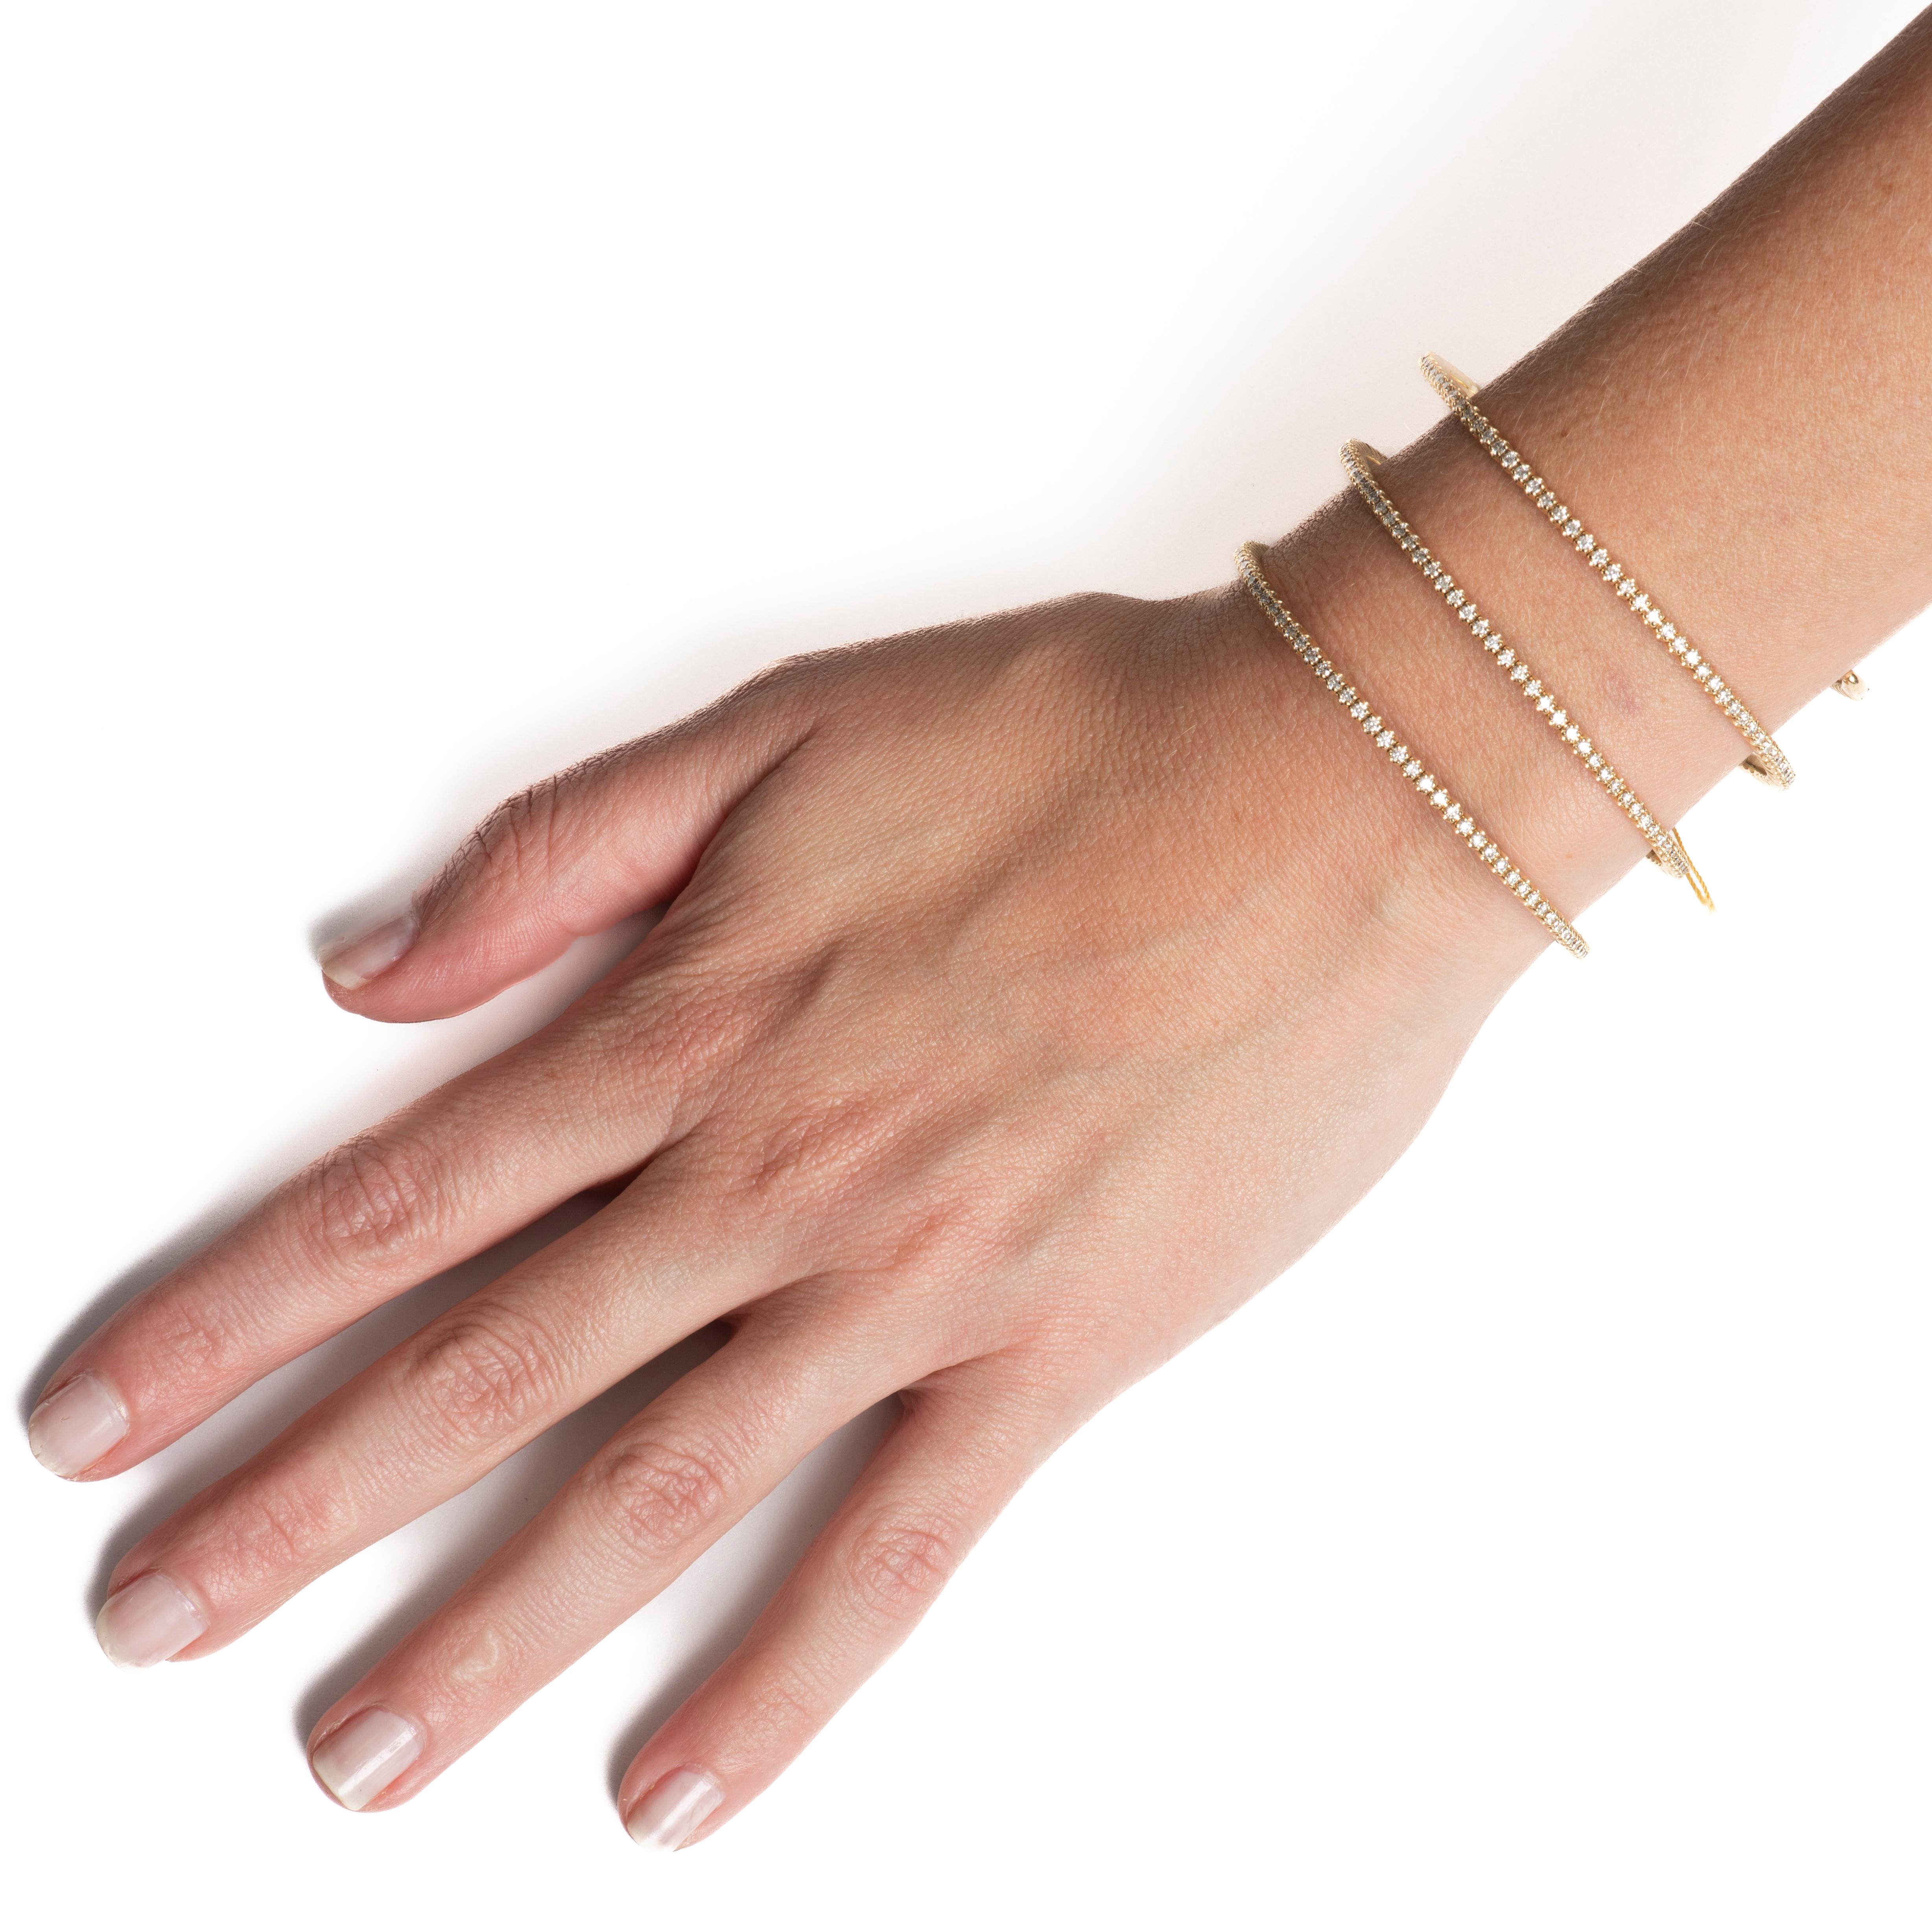 Ce bracelet flexible présente un poids total de 5,42 carats de diamants naturels ronds de taille brillant, sertis sur trois rangs qui s'enroulent autour de votre bras. Il est serti dans de l'or jaune 14 carats. Il est délicat à porter tous les jours